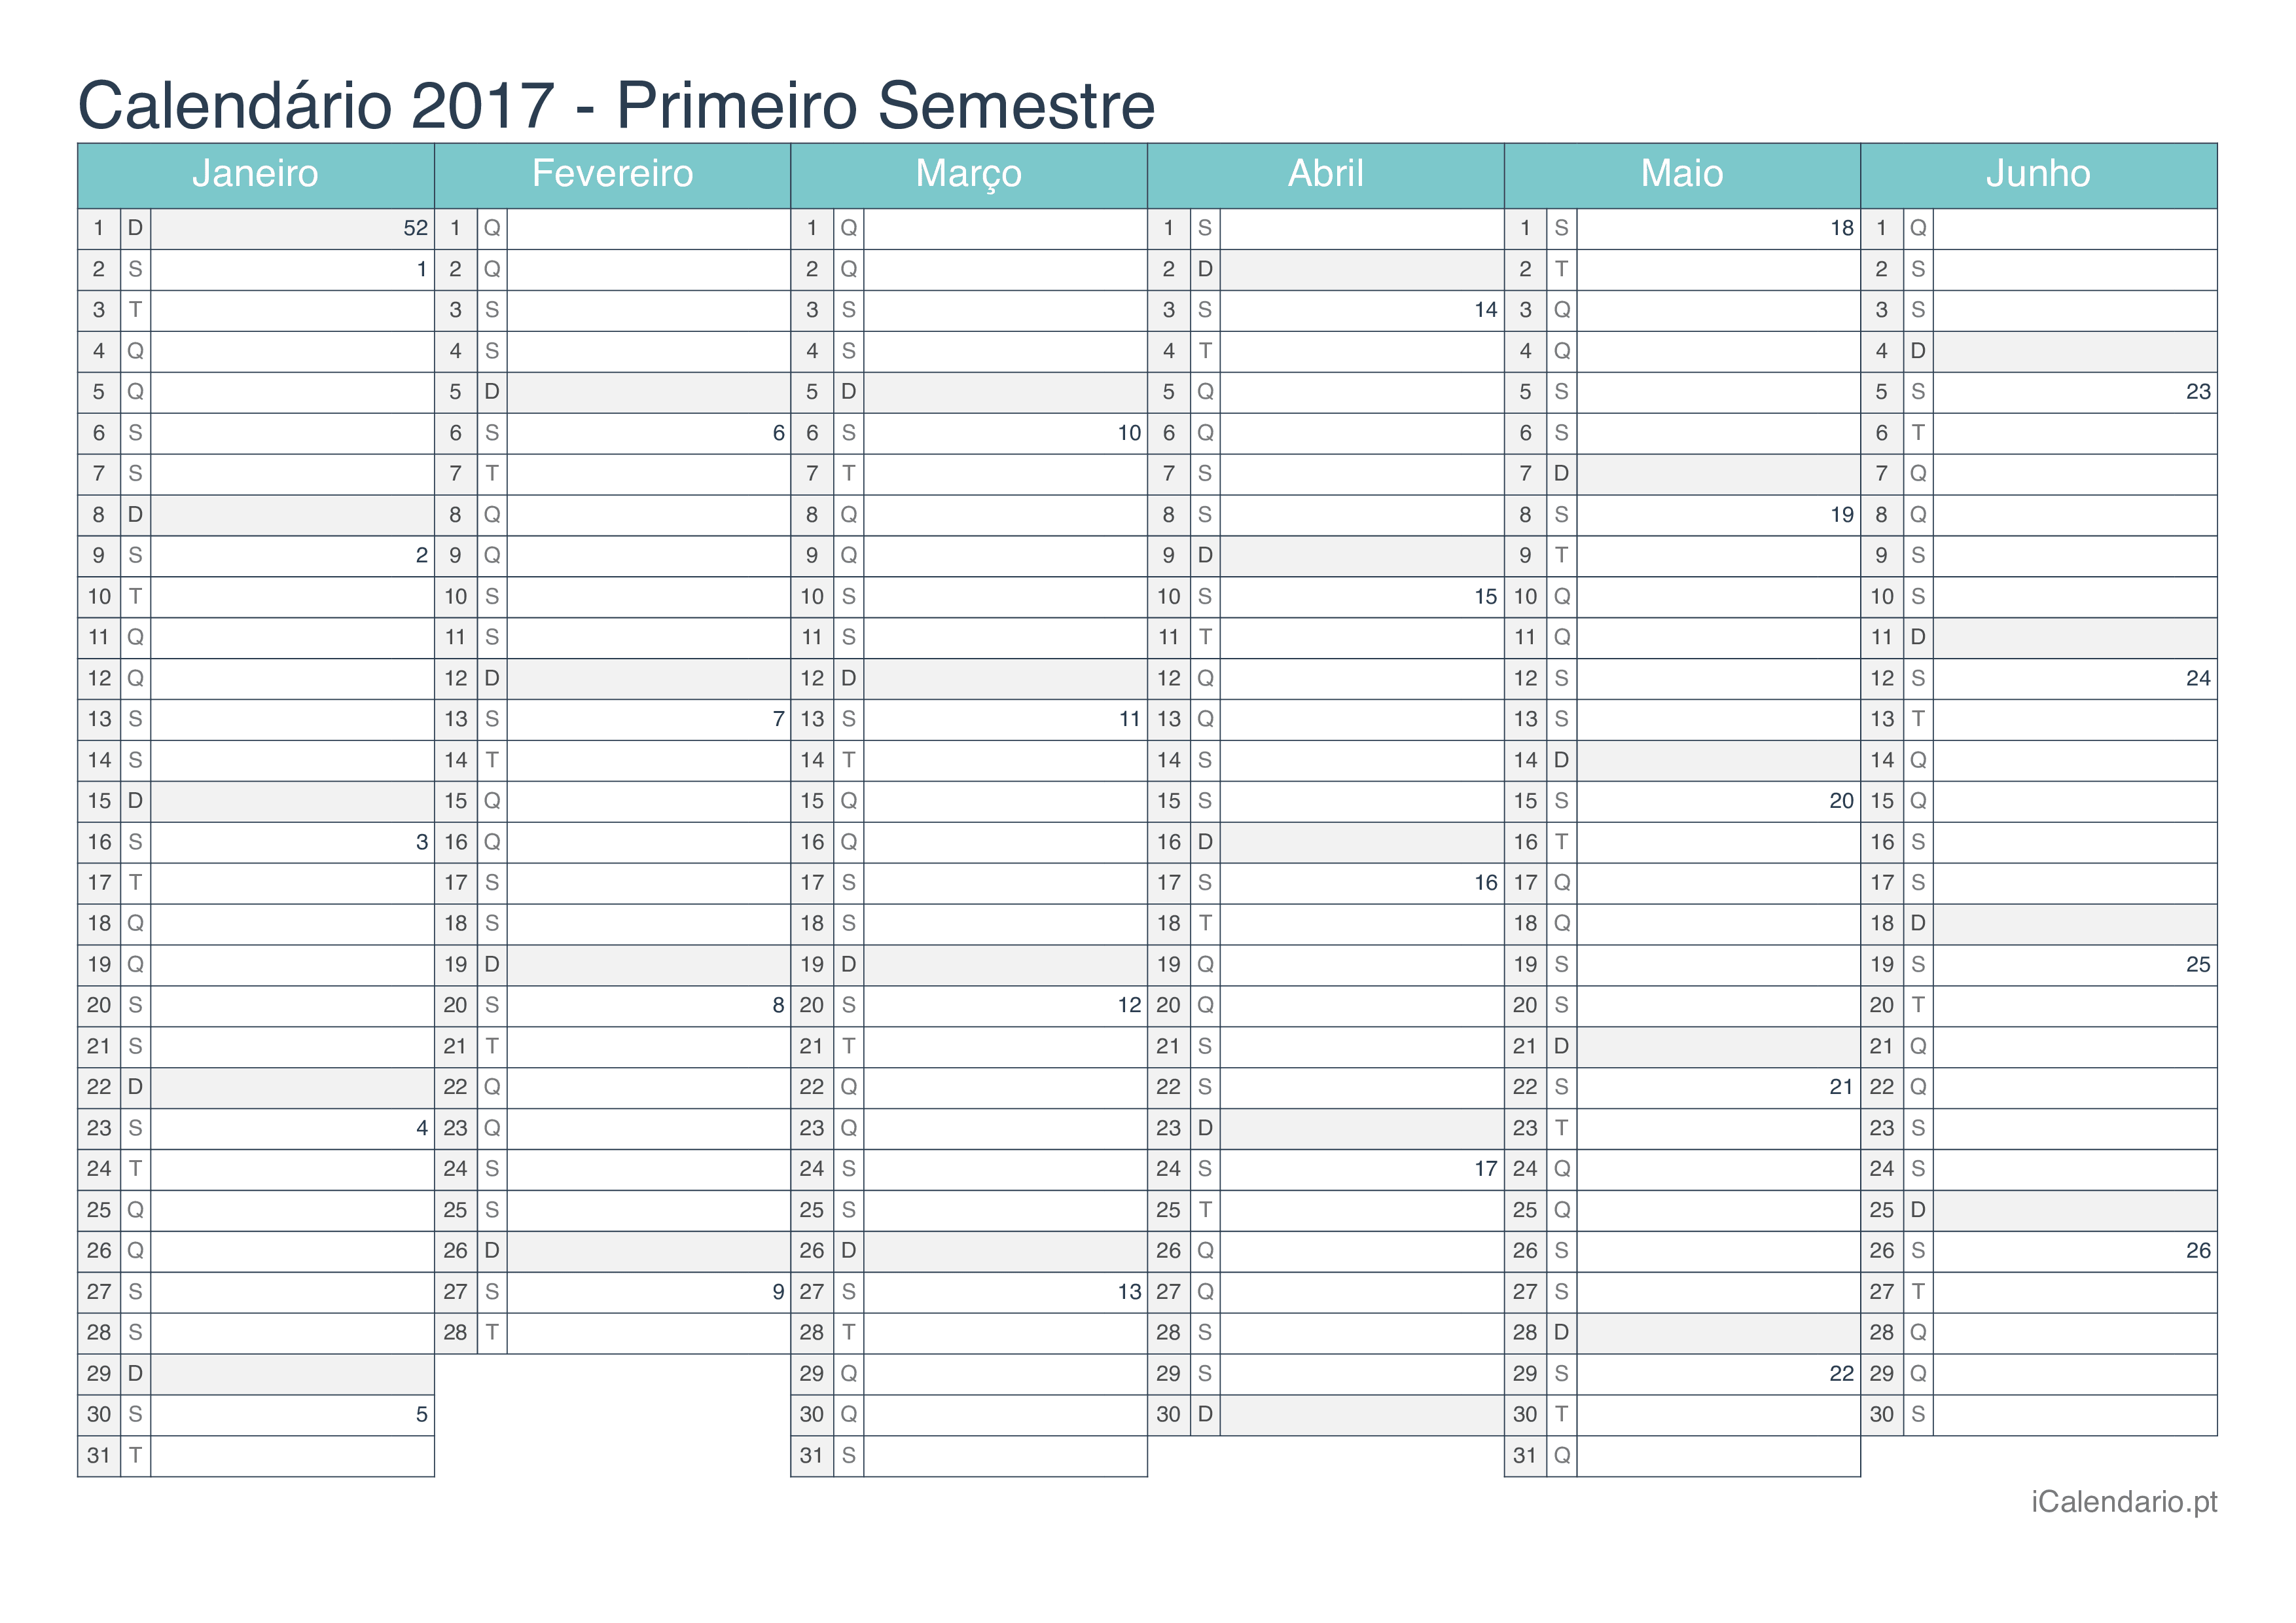 Calendário por semestre com números da semana 2017 - Turquesa